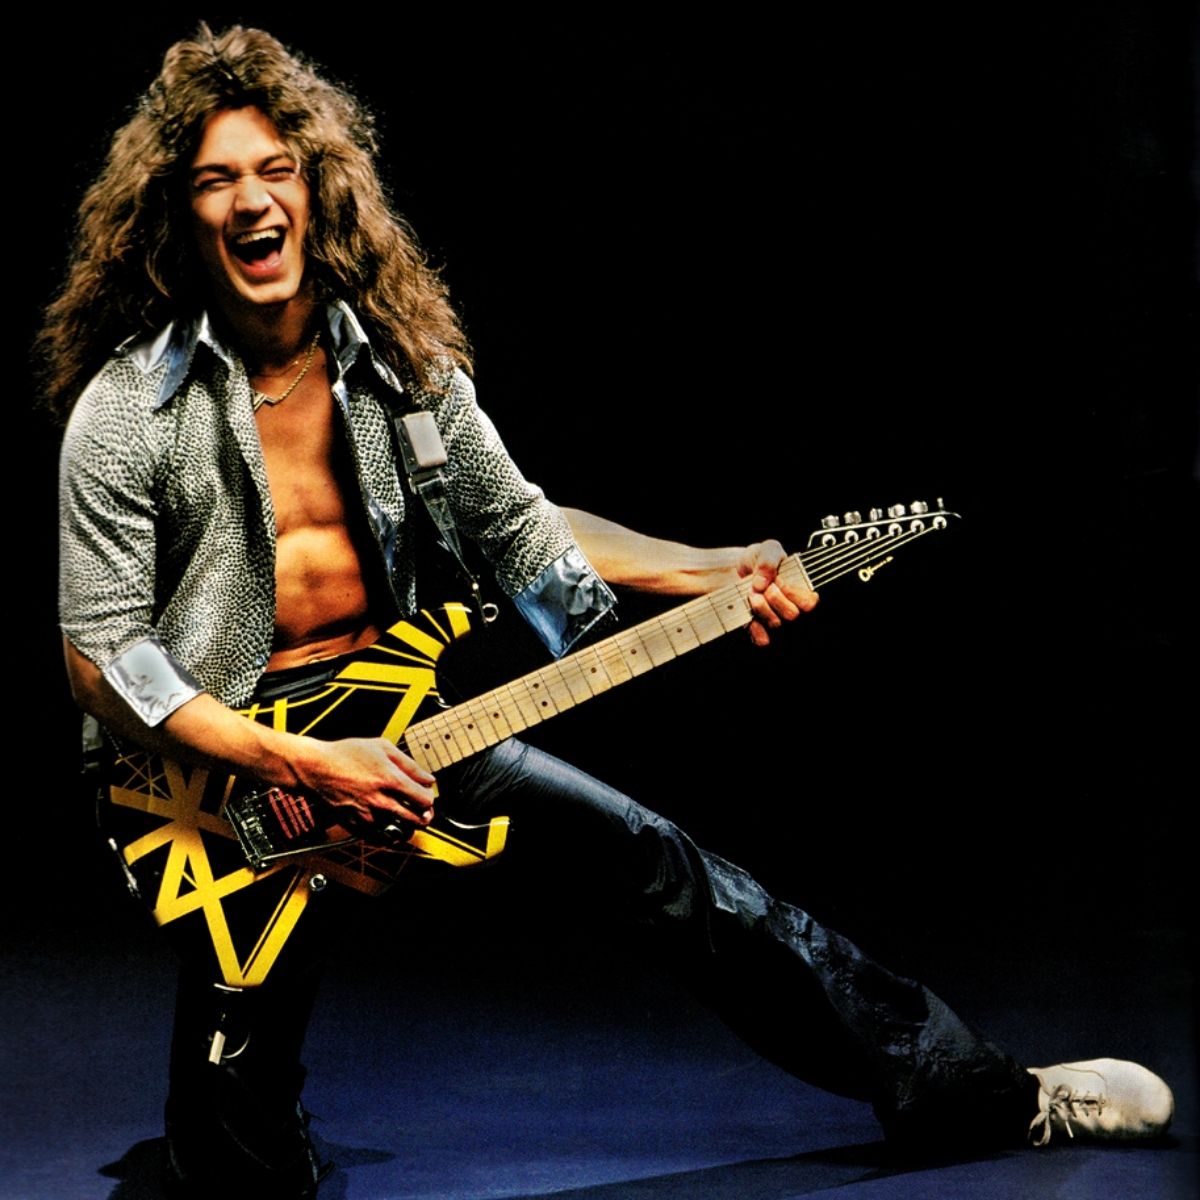 Eddie Van Halen (Eddie Van Halen) in his youth